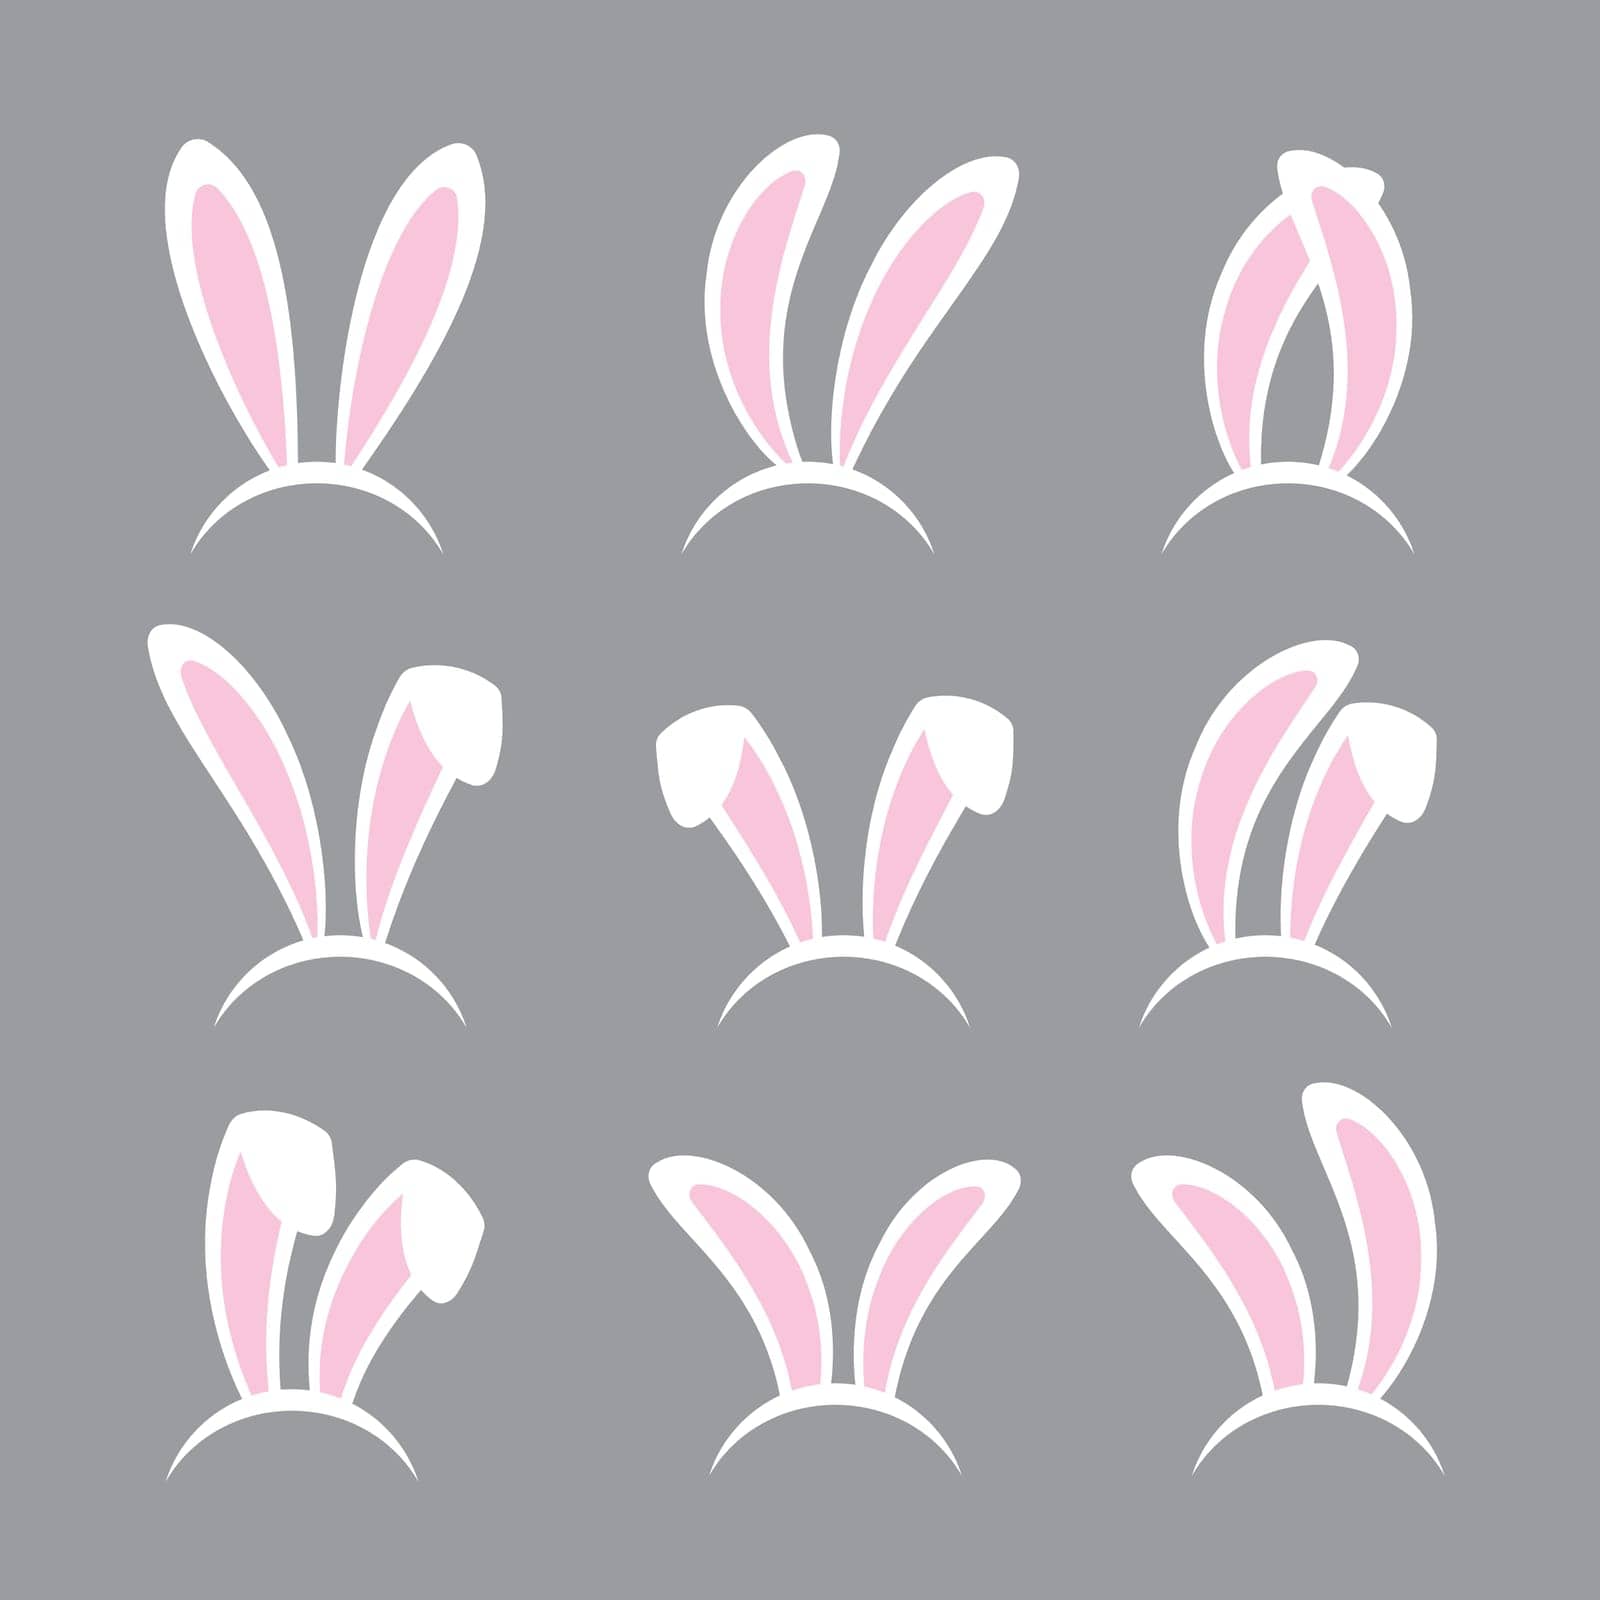 Rabbit ears headband set. Easter bunny ears isolated on background.